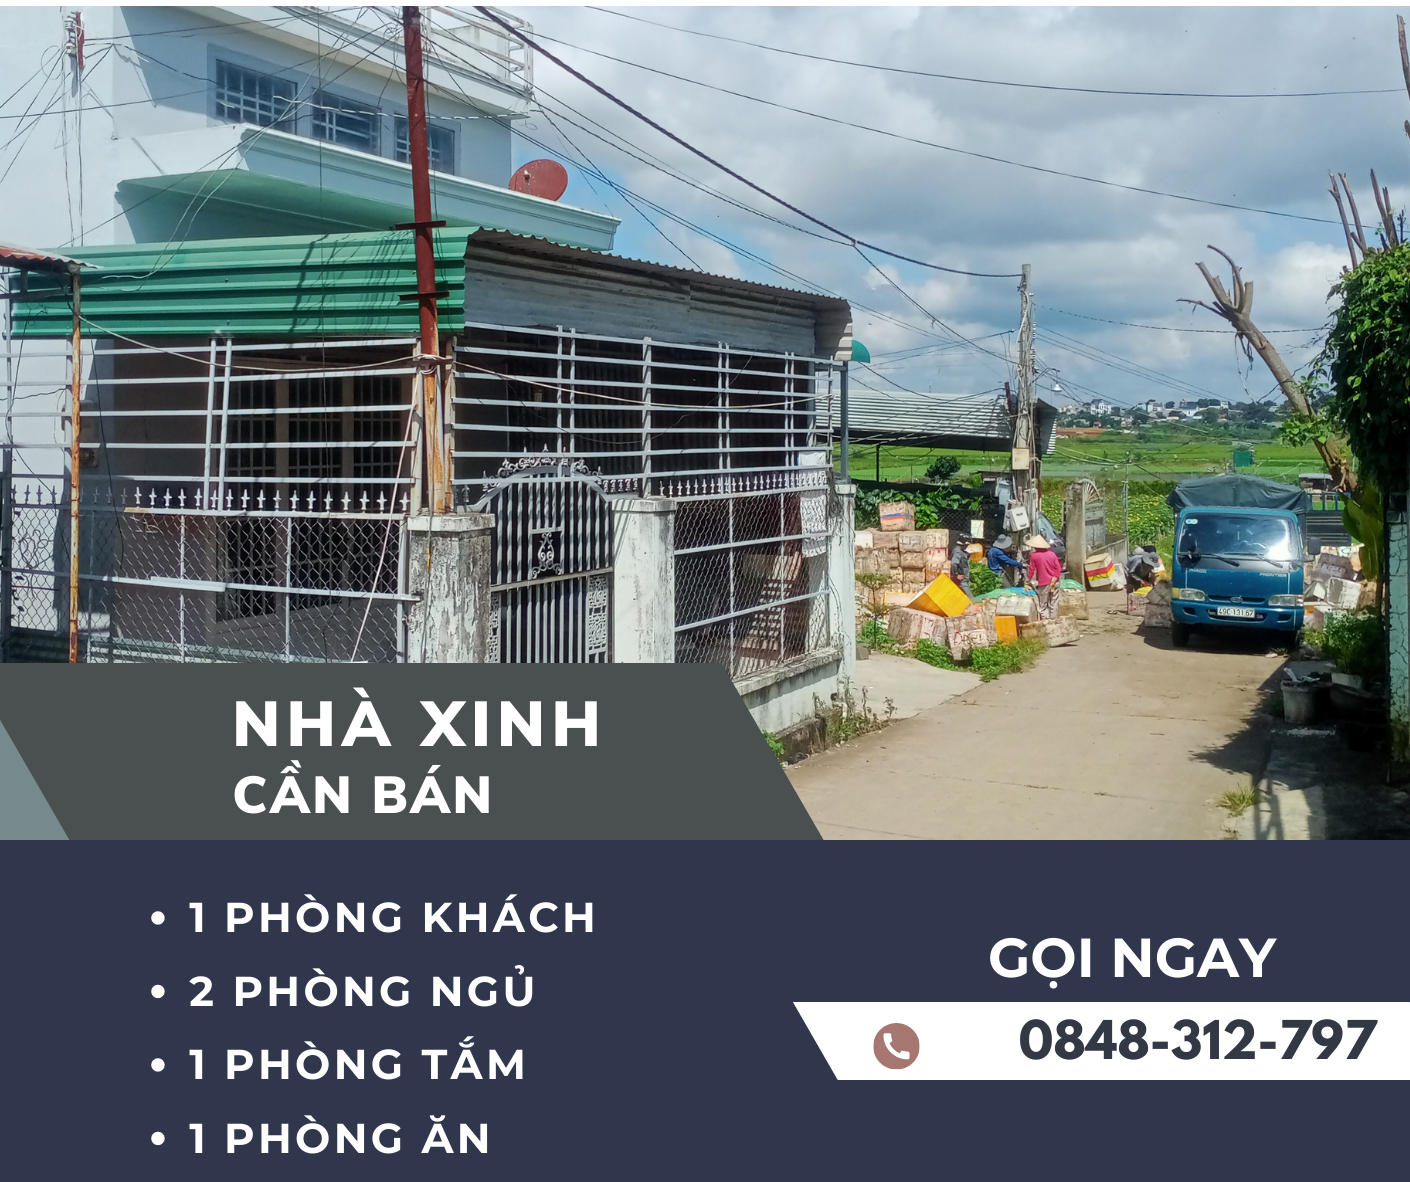 Cần bán Nhà ở, nhà cấp 4, nhà hẻm đường Nguyễn Bá Ngọc, Xã Phú Hội, Diện tích 144m², Giá 1.8 Tỷ 1